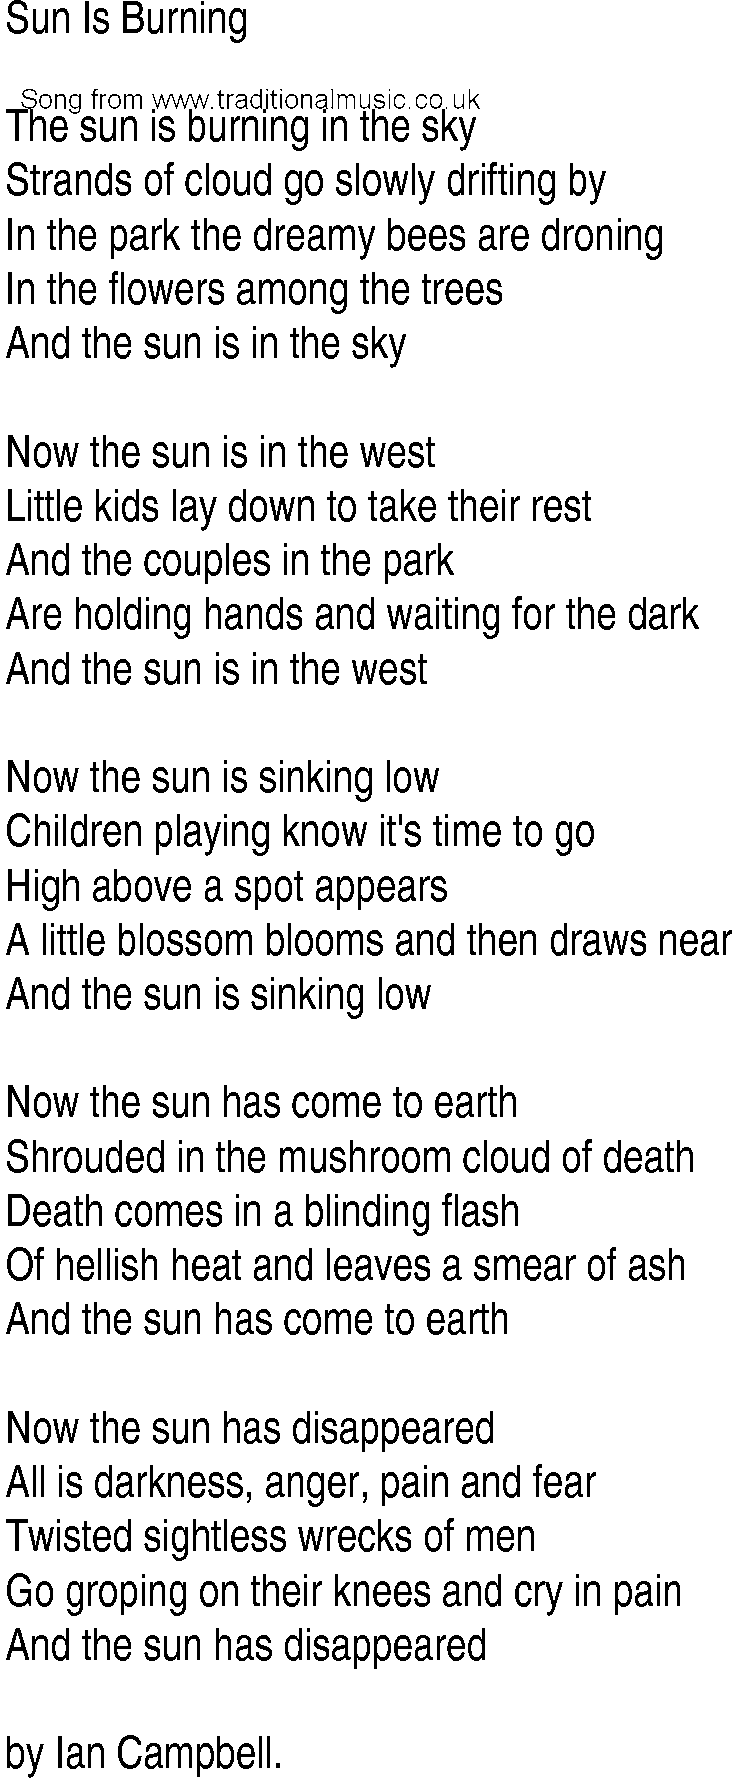 Irish Music Song And Ballad Lyrics For Sun Is Burning